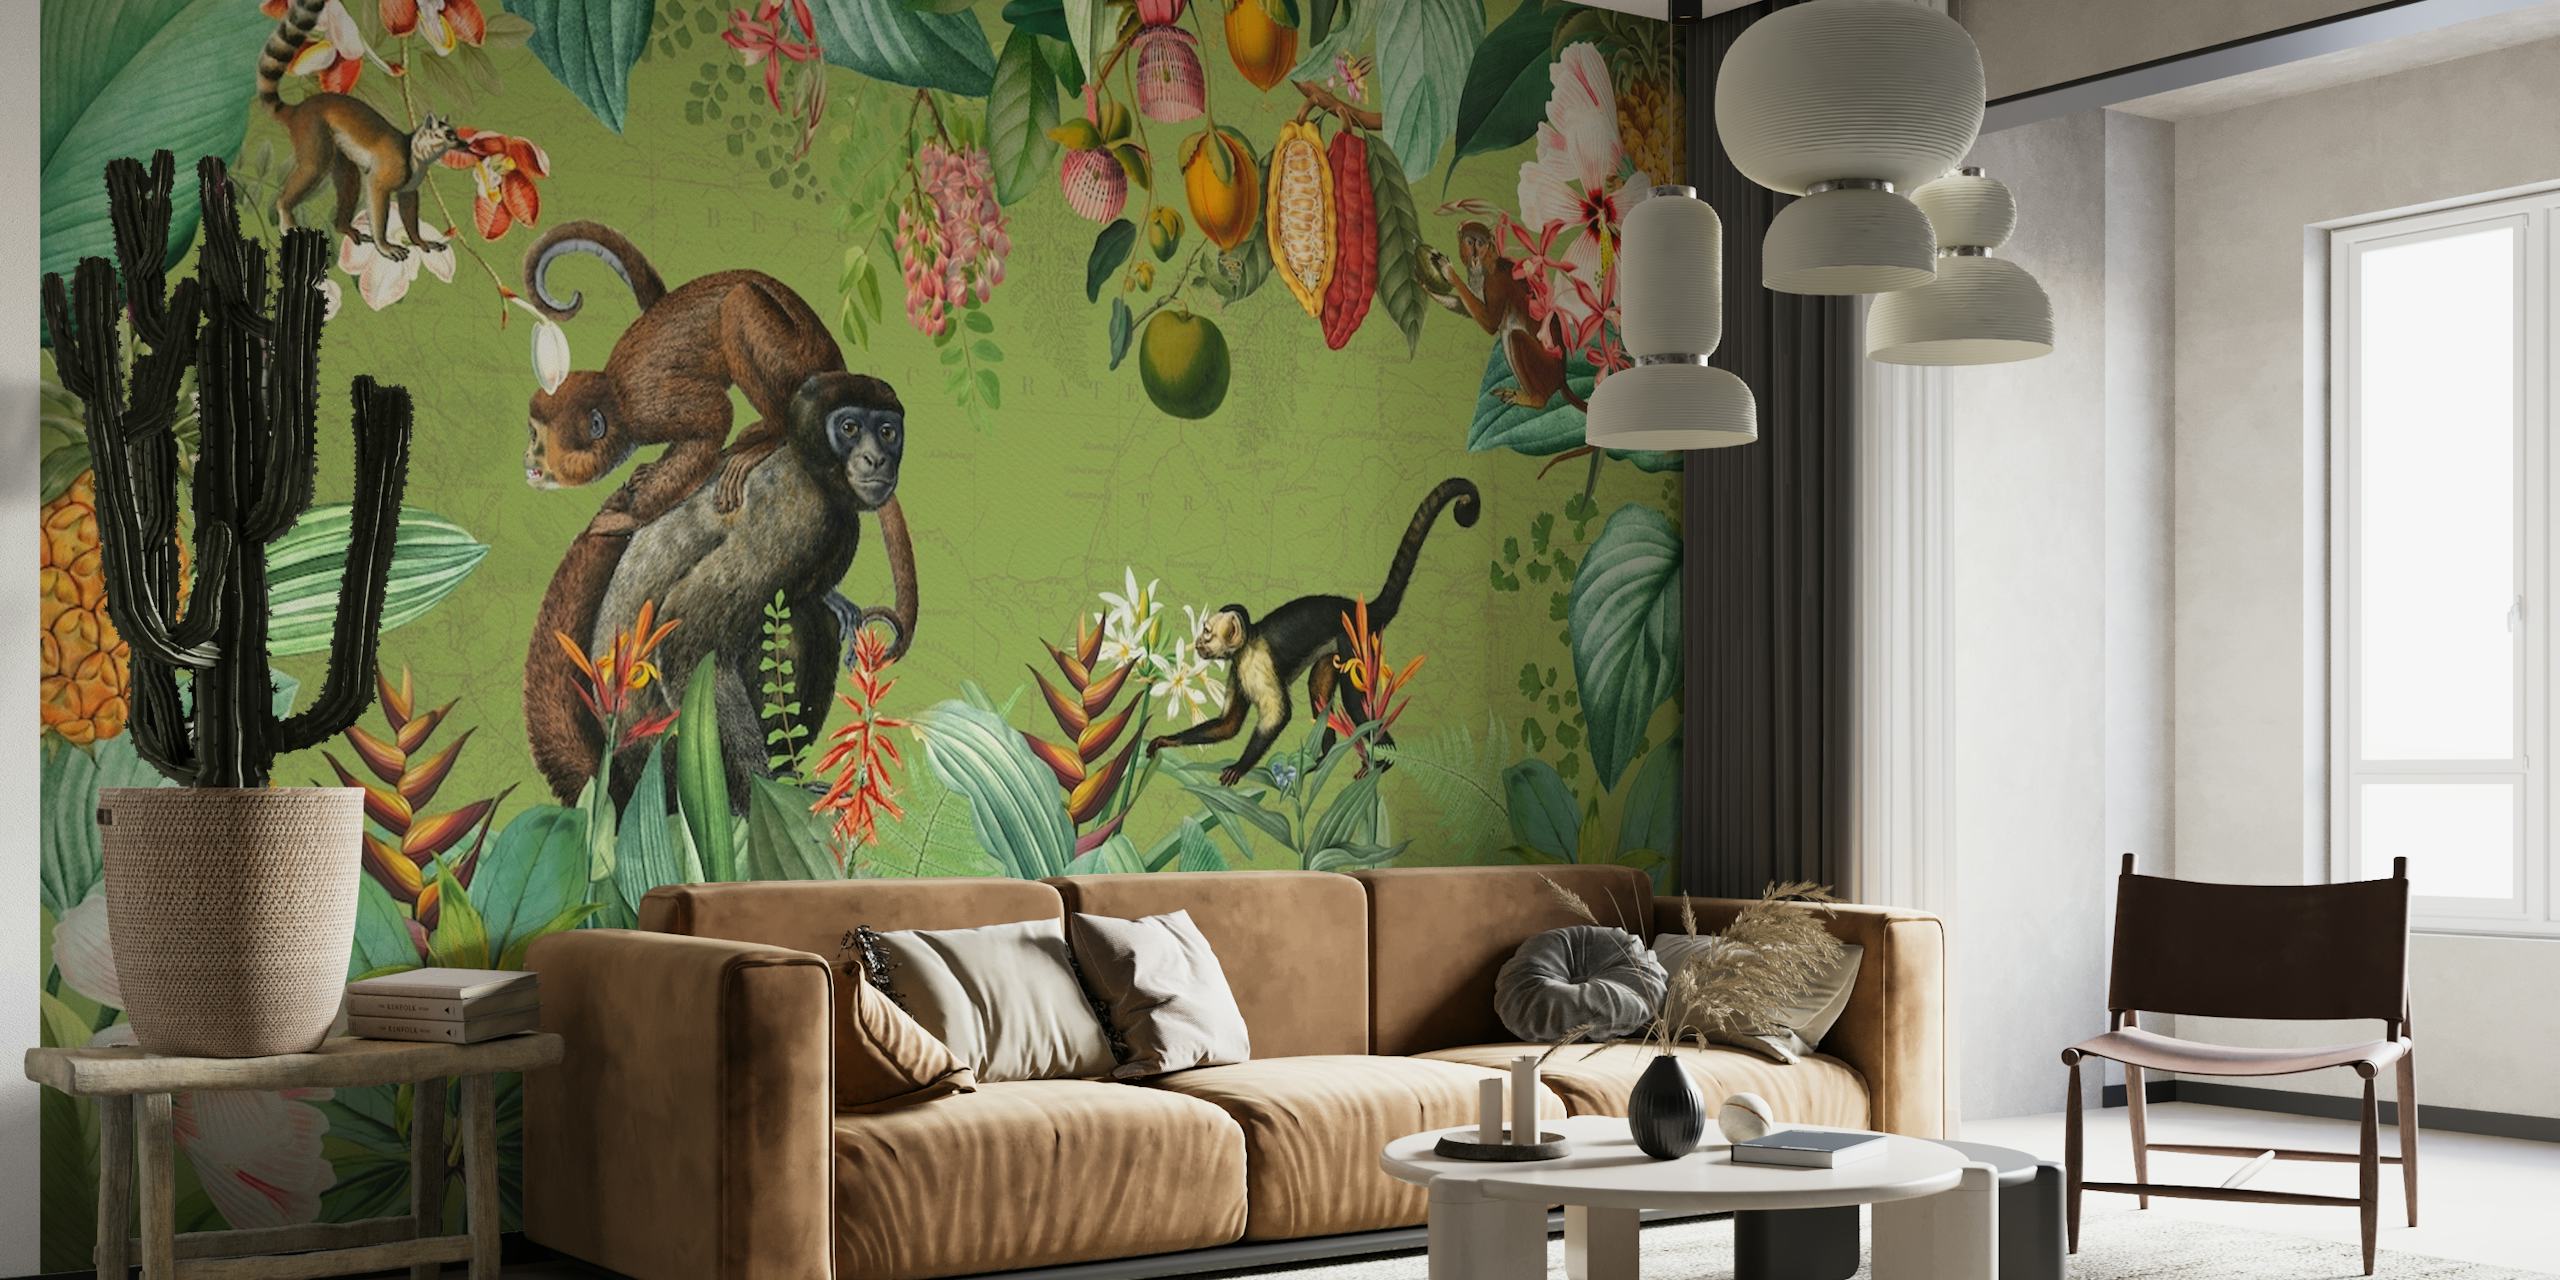 Et vægmaleri i vintagestil, der afbilder aber og tropiske planter i en afrikansk jungle